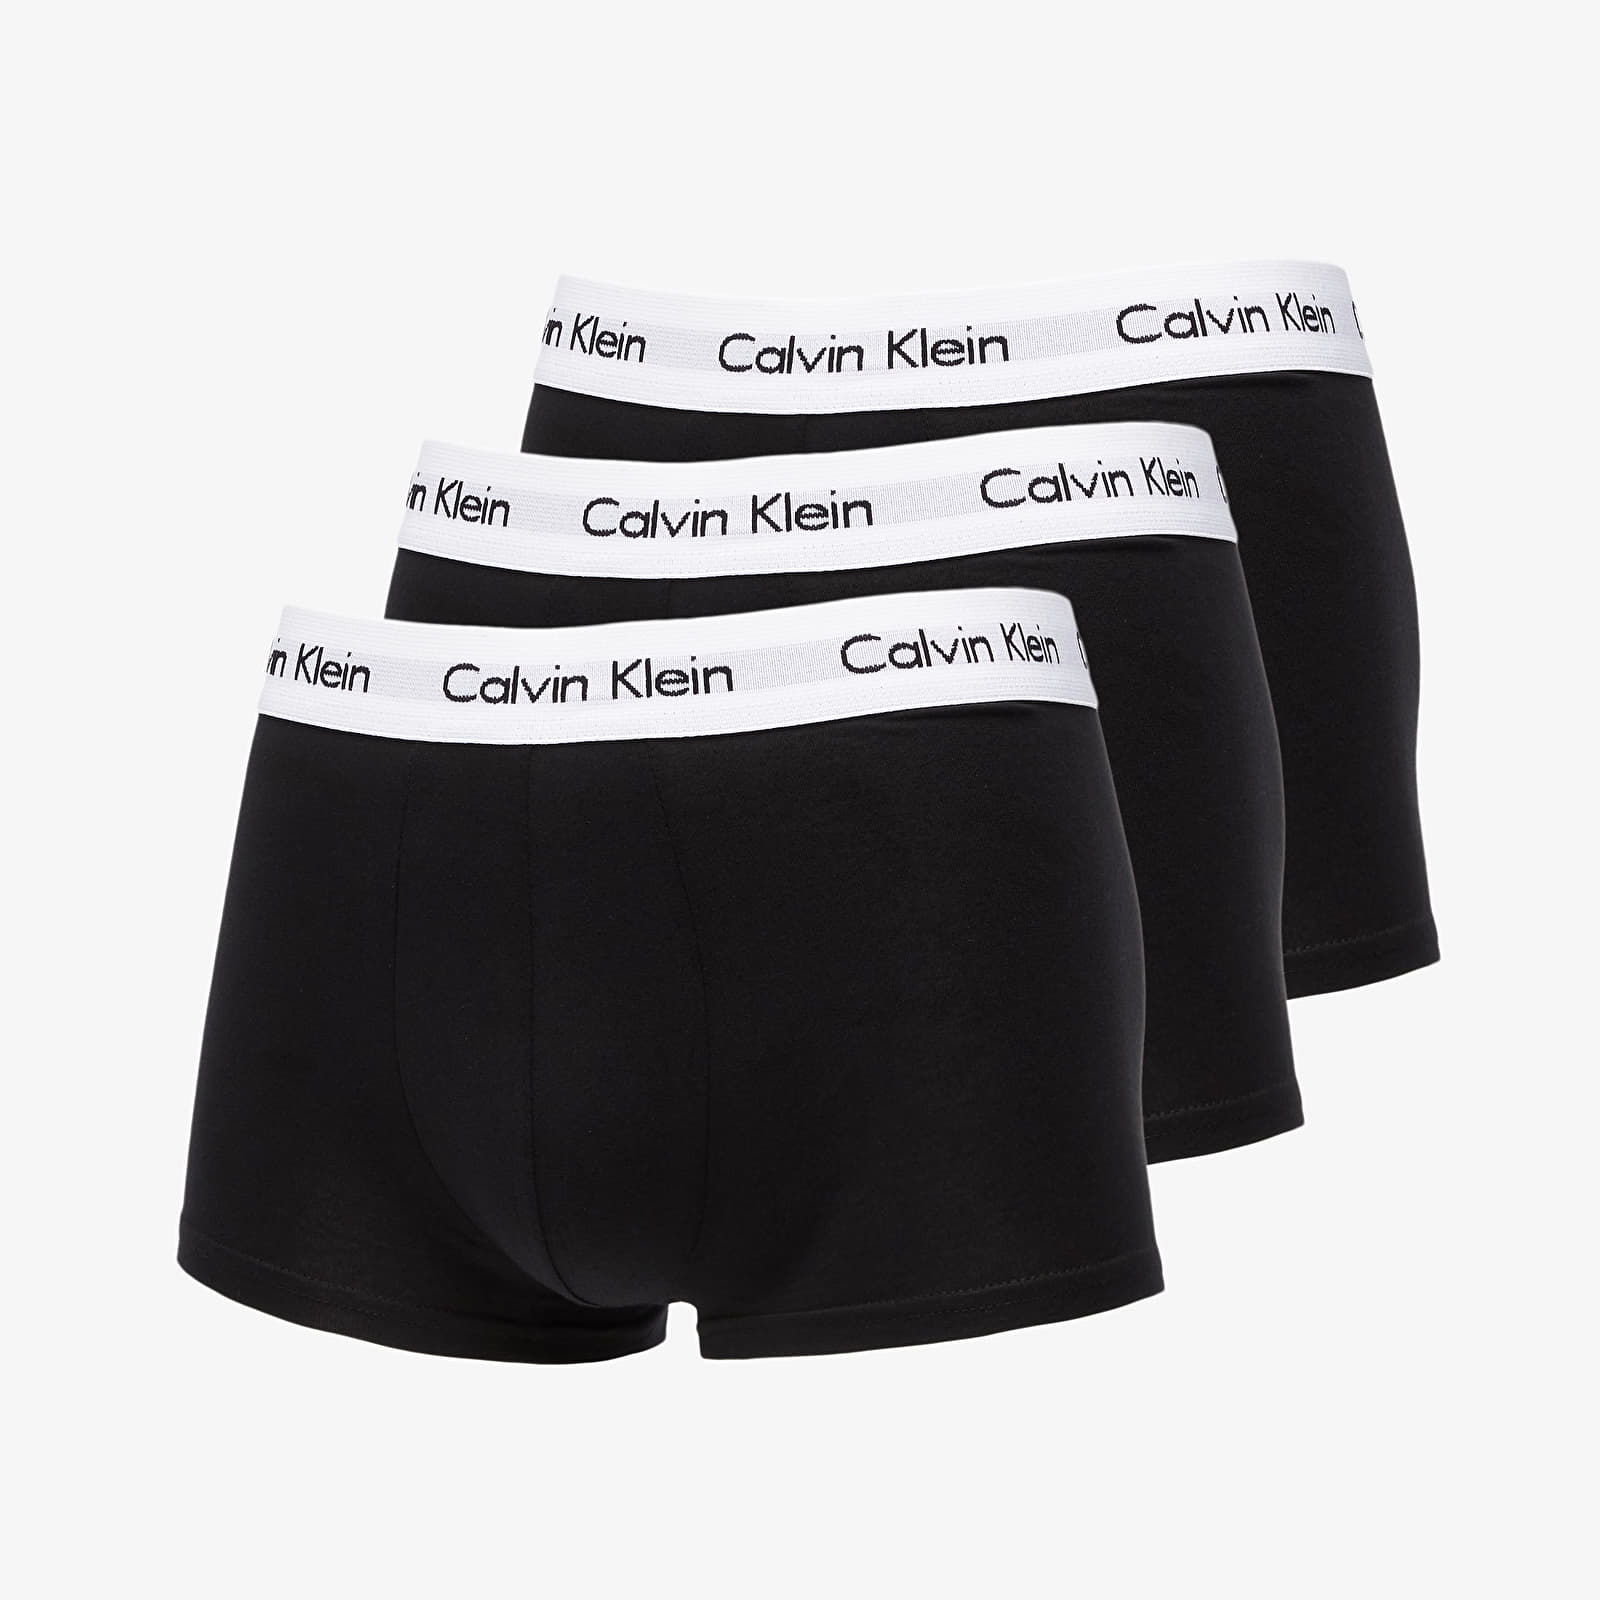 Trunchiuri Calvin Klein Low Rise Trunks 3 Pack Black